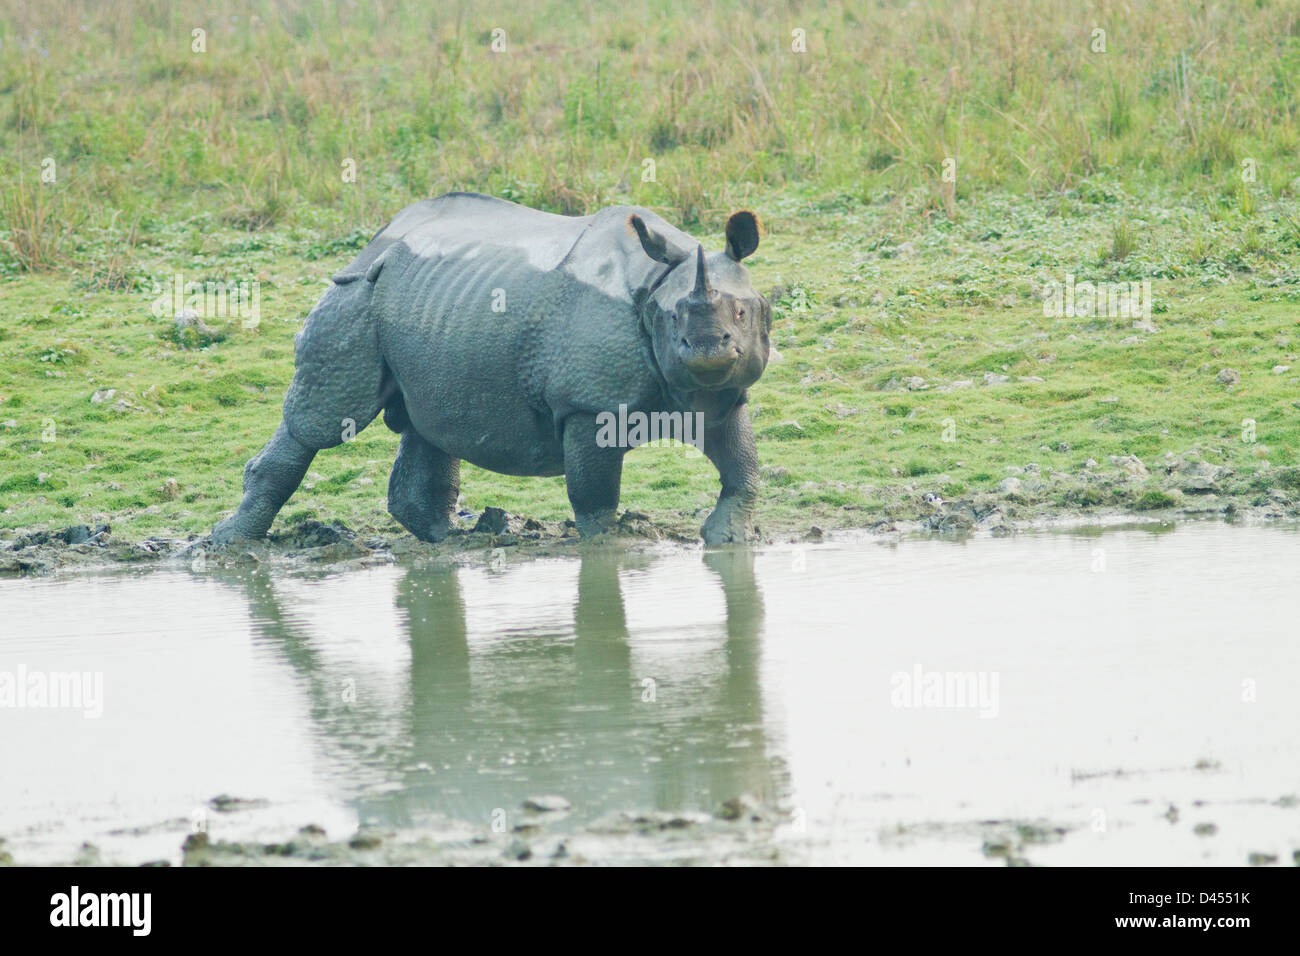 Un rhinocéros unicornes entrant dans la jungle, étang, parc national de Kaziranga, Inde Banque D'Images